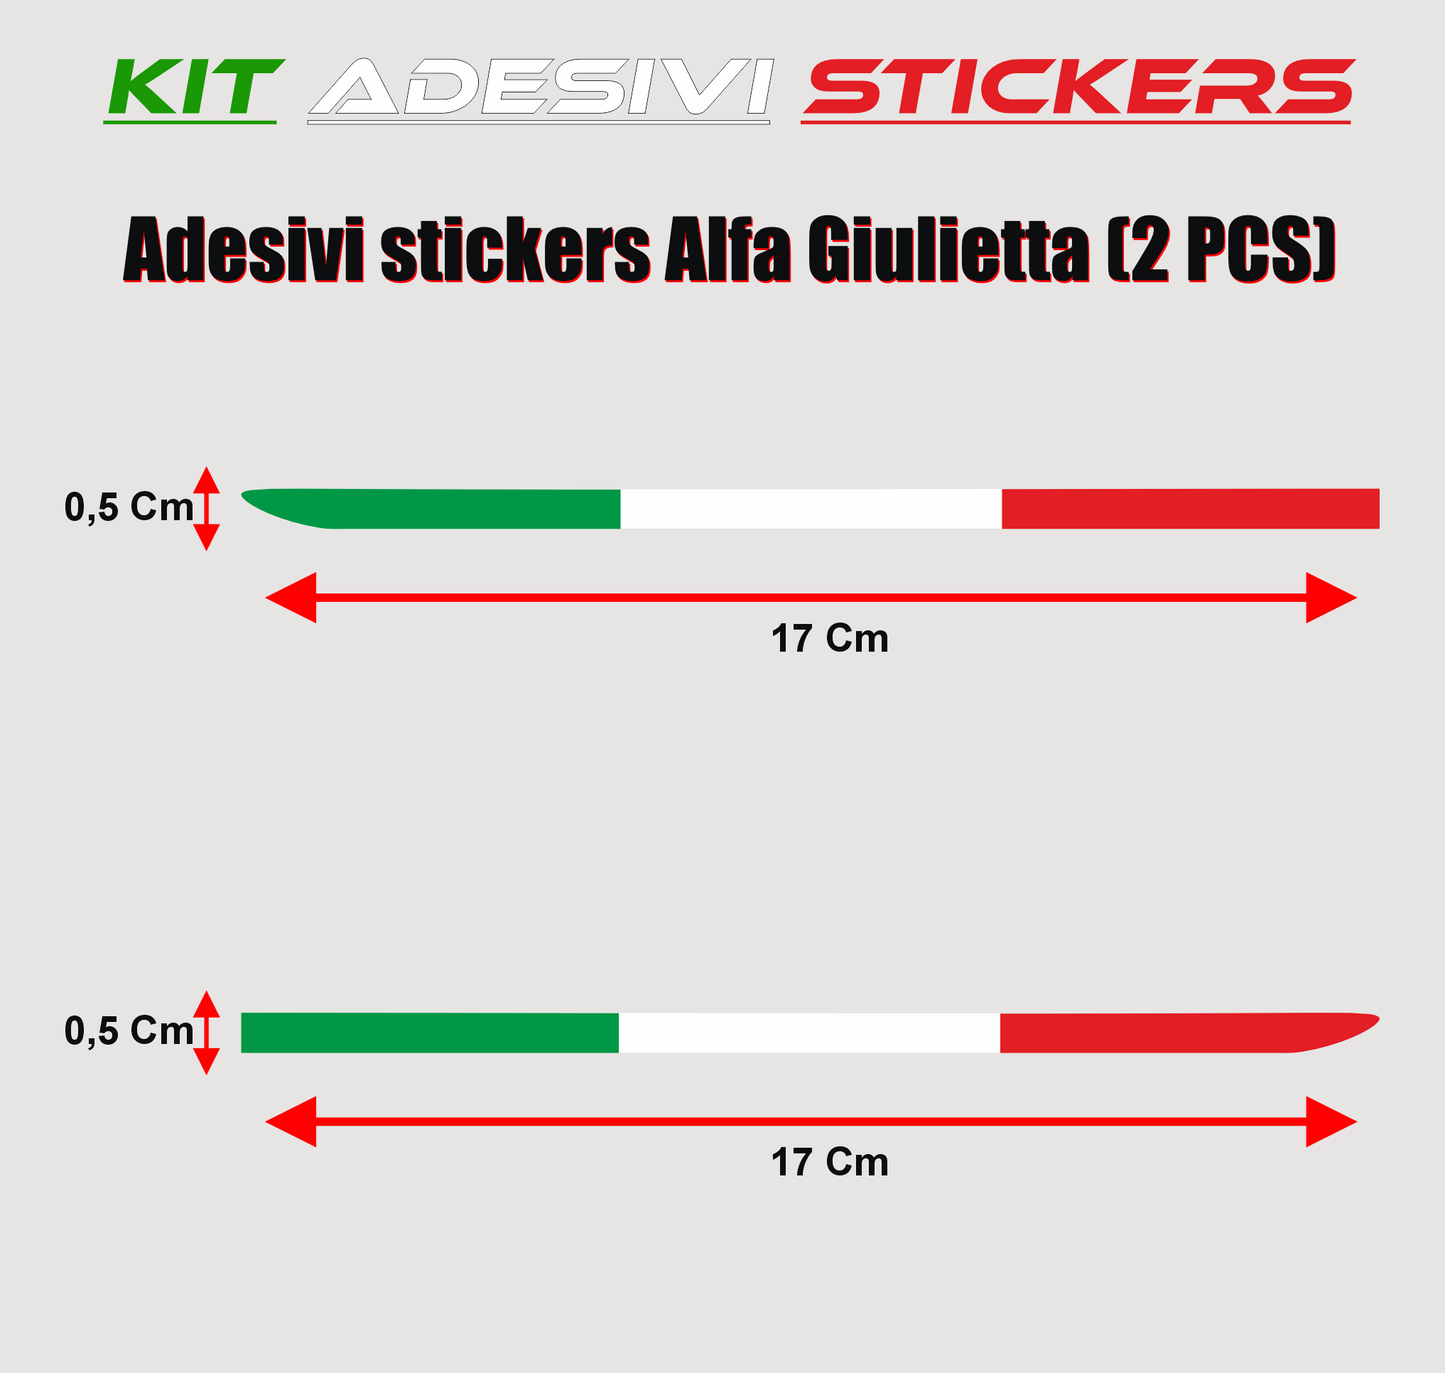 DualColorStampe Adesivi Compatibili con Alfa romeo Giulietta 147 156 159 Mito stickers tricolore per specchietti accessori auto COD.0192 a €9.99 solo da DualColorStampe